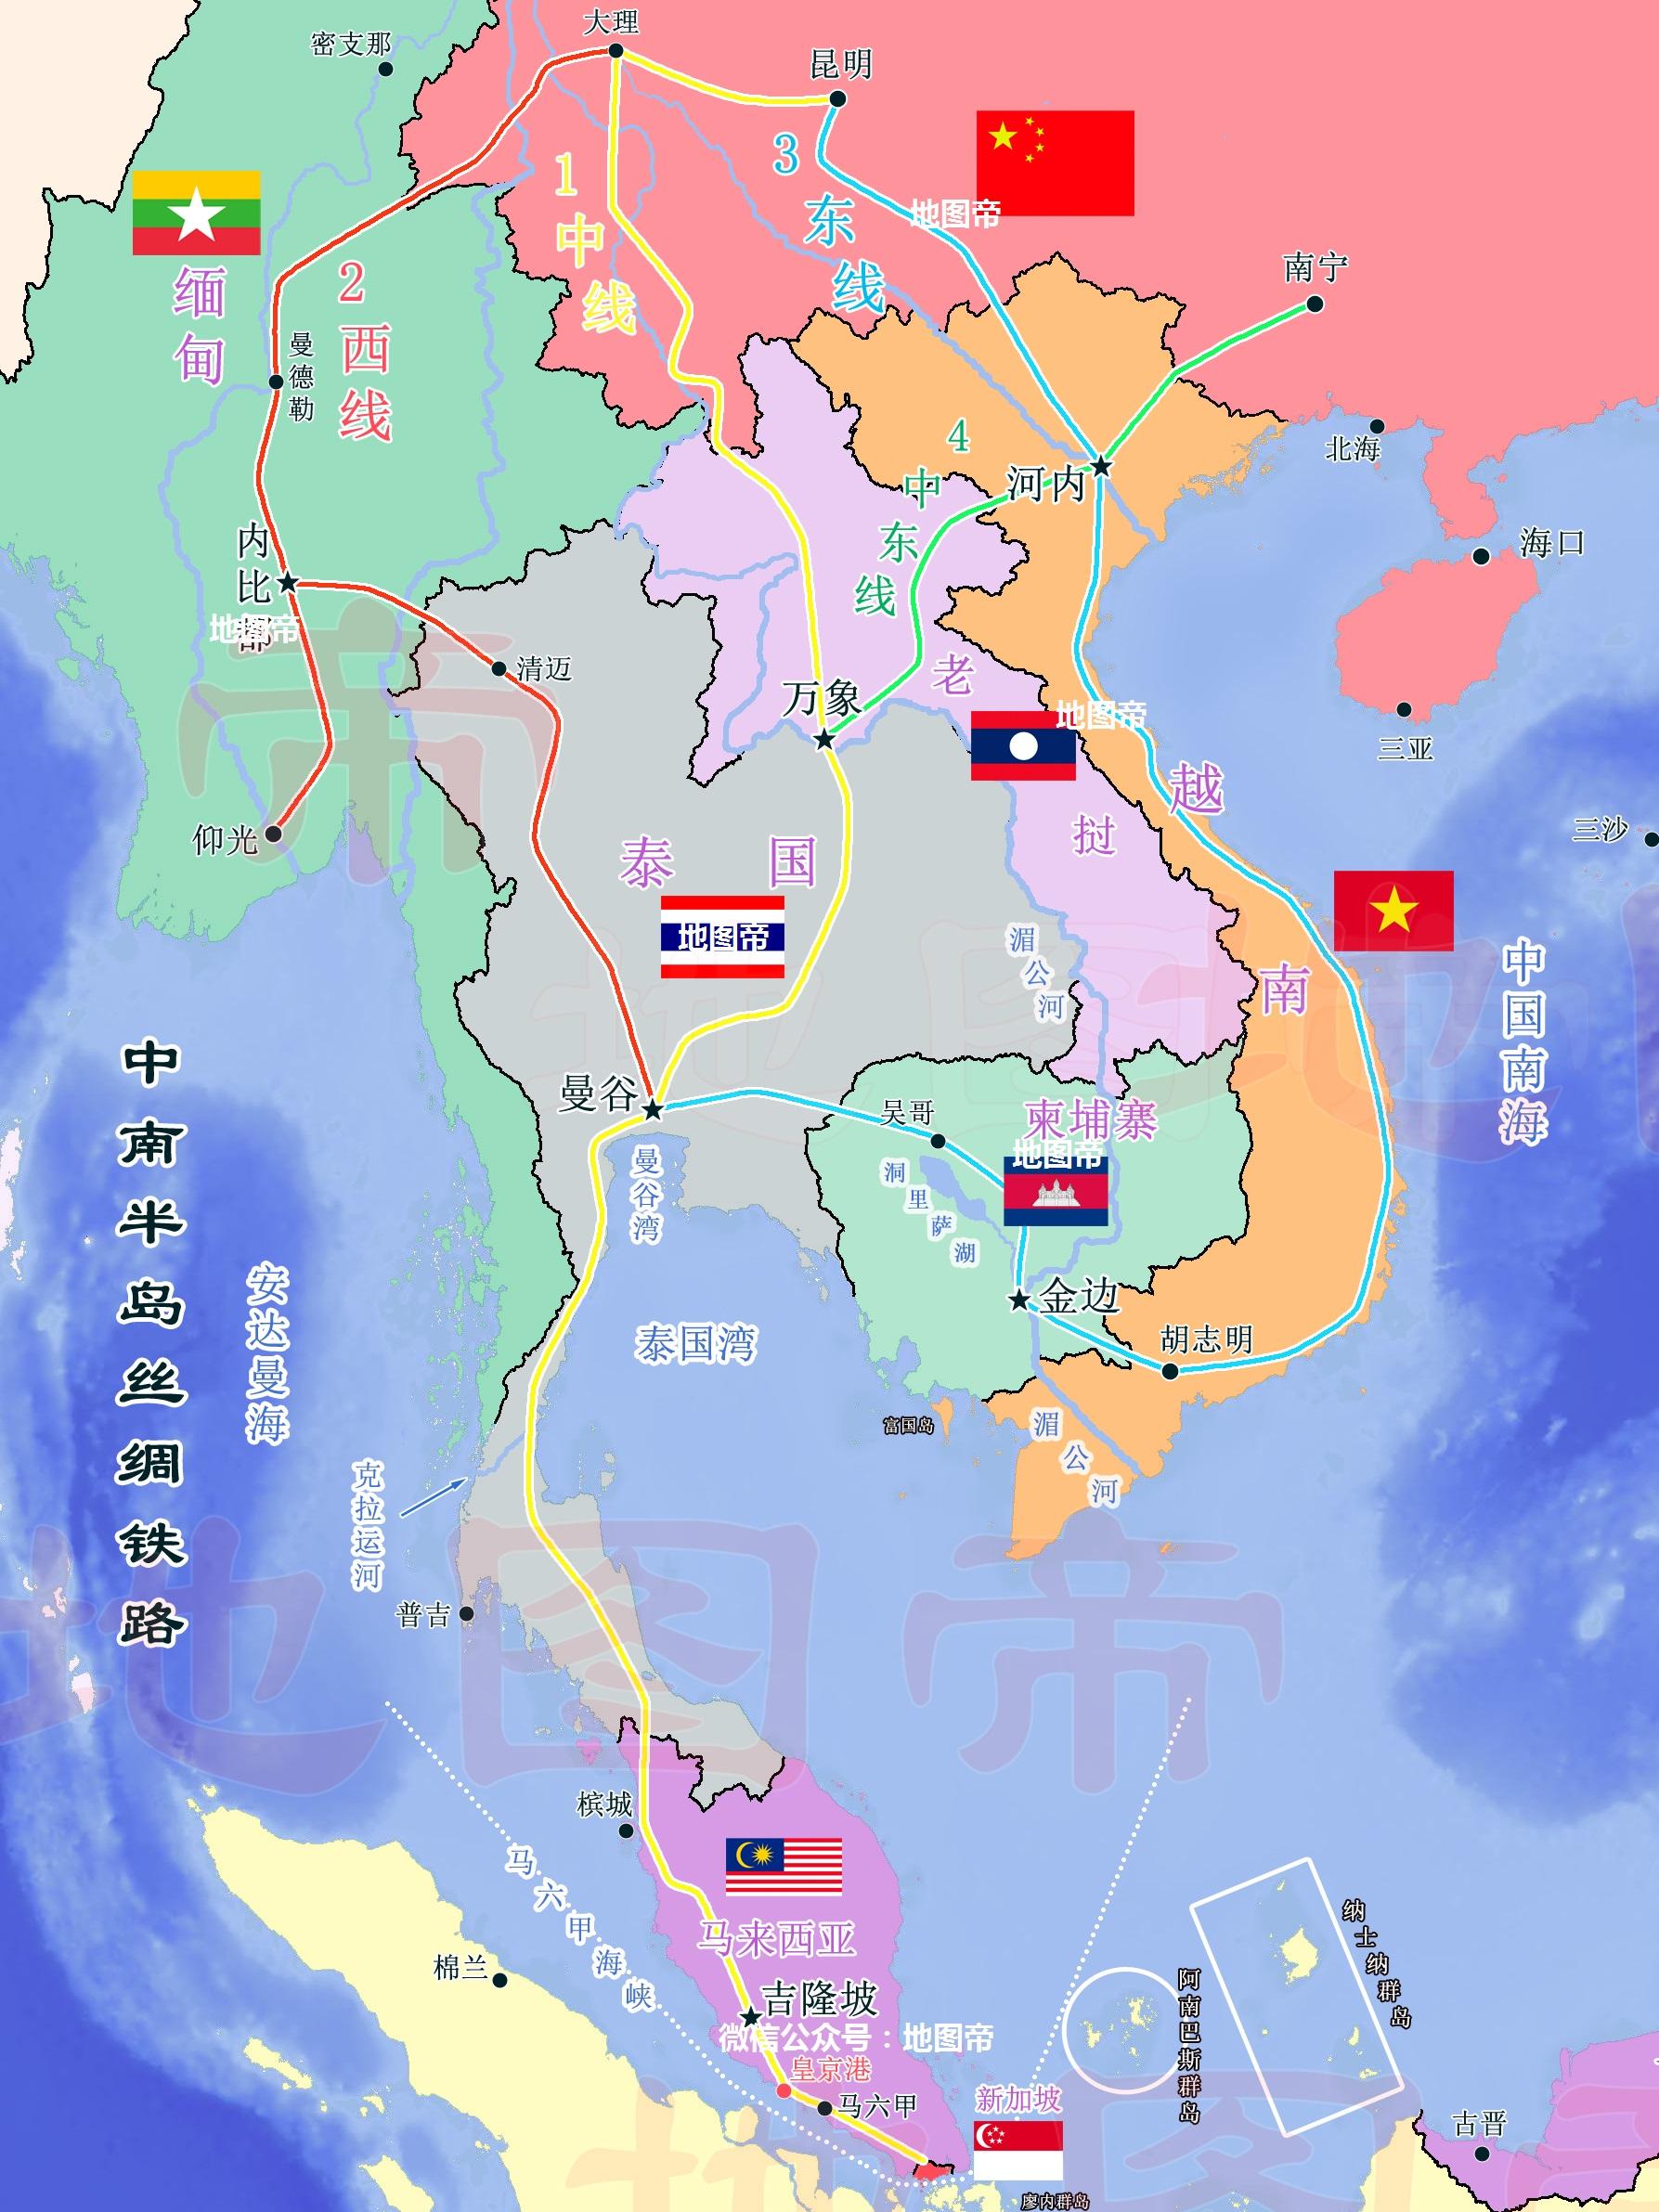 英国泰国殖民地图片